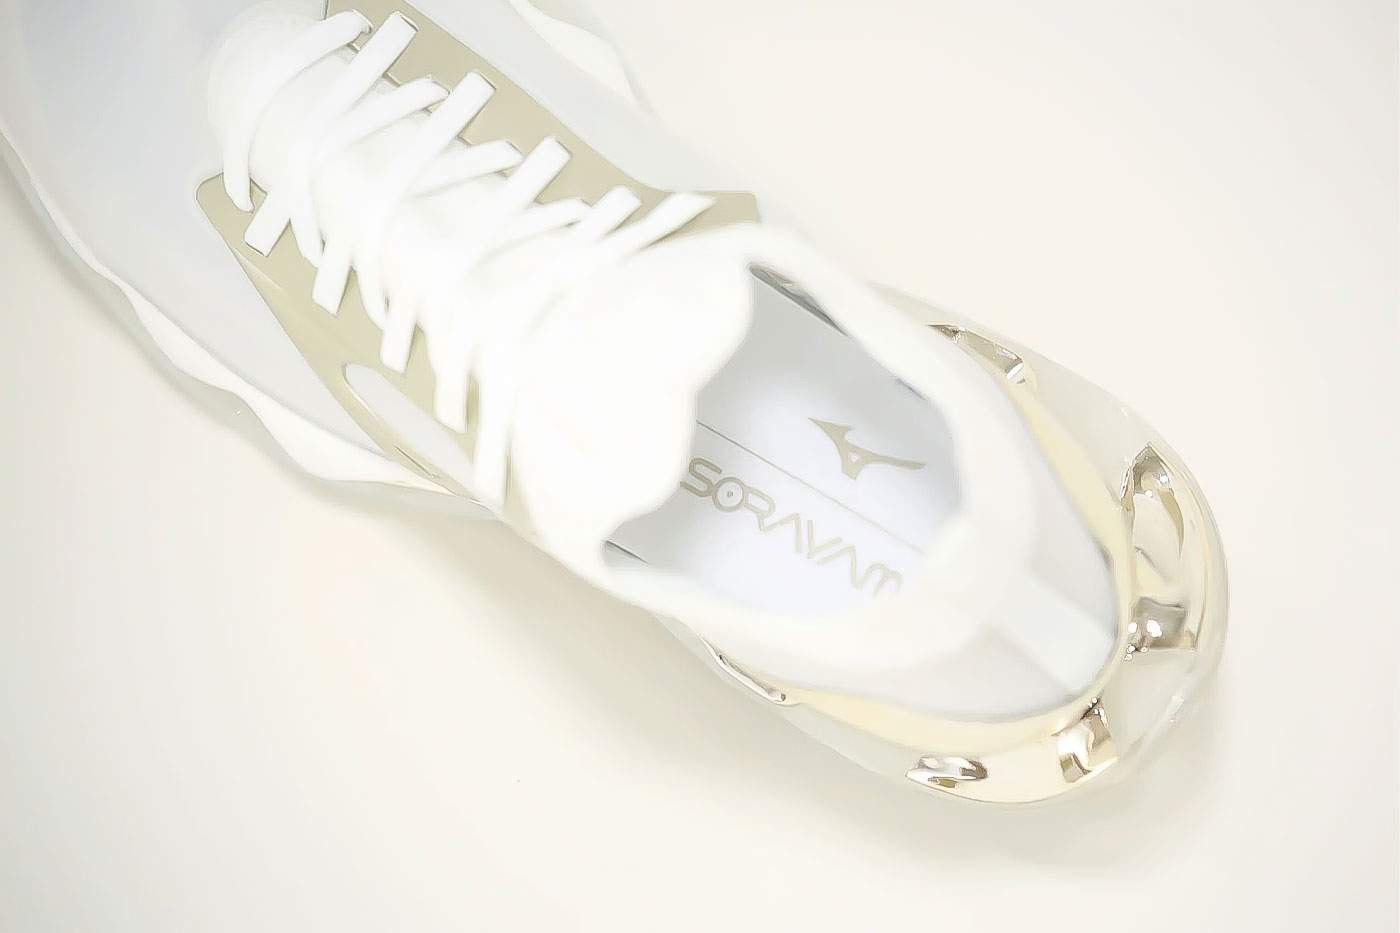 미즈노 x 소라야마 하지메 협업 시리즈의 마지막 제품 출시 정보 mizuno sorayama hajime Wave Prophecy 10 Champagne Gold sneaker collaboration